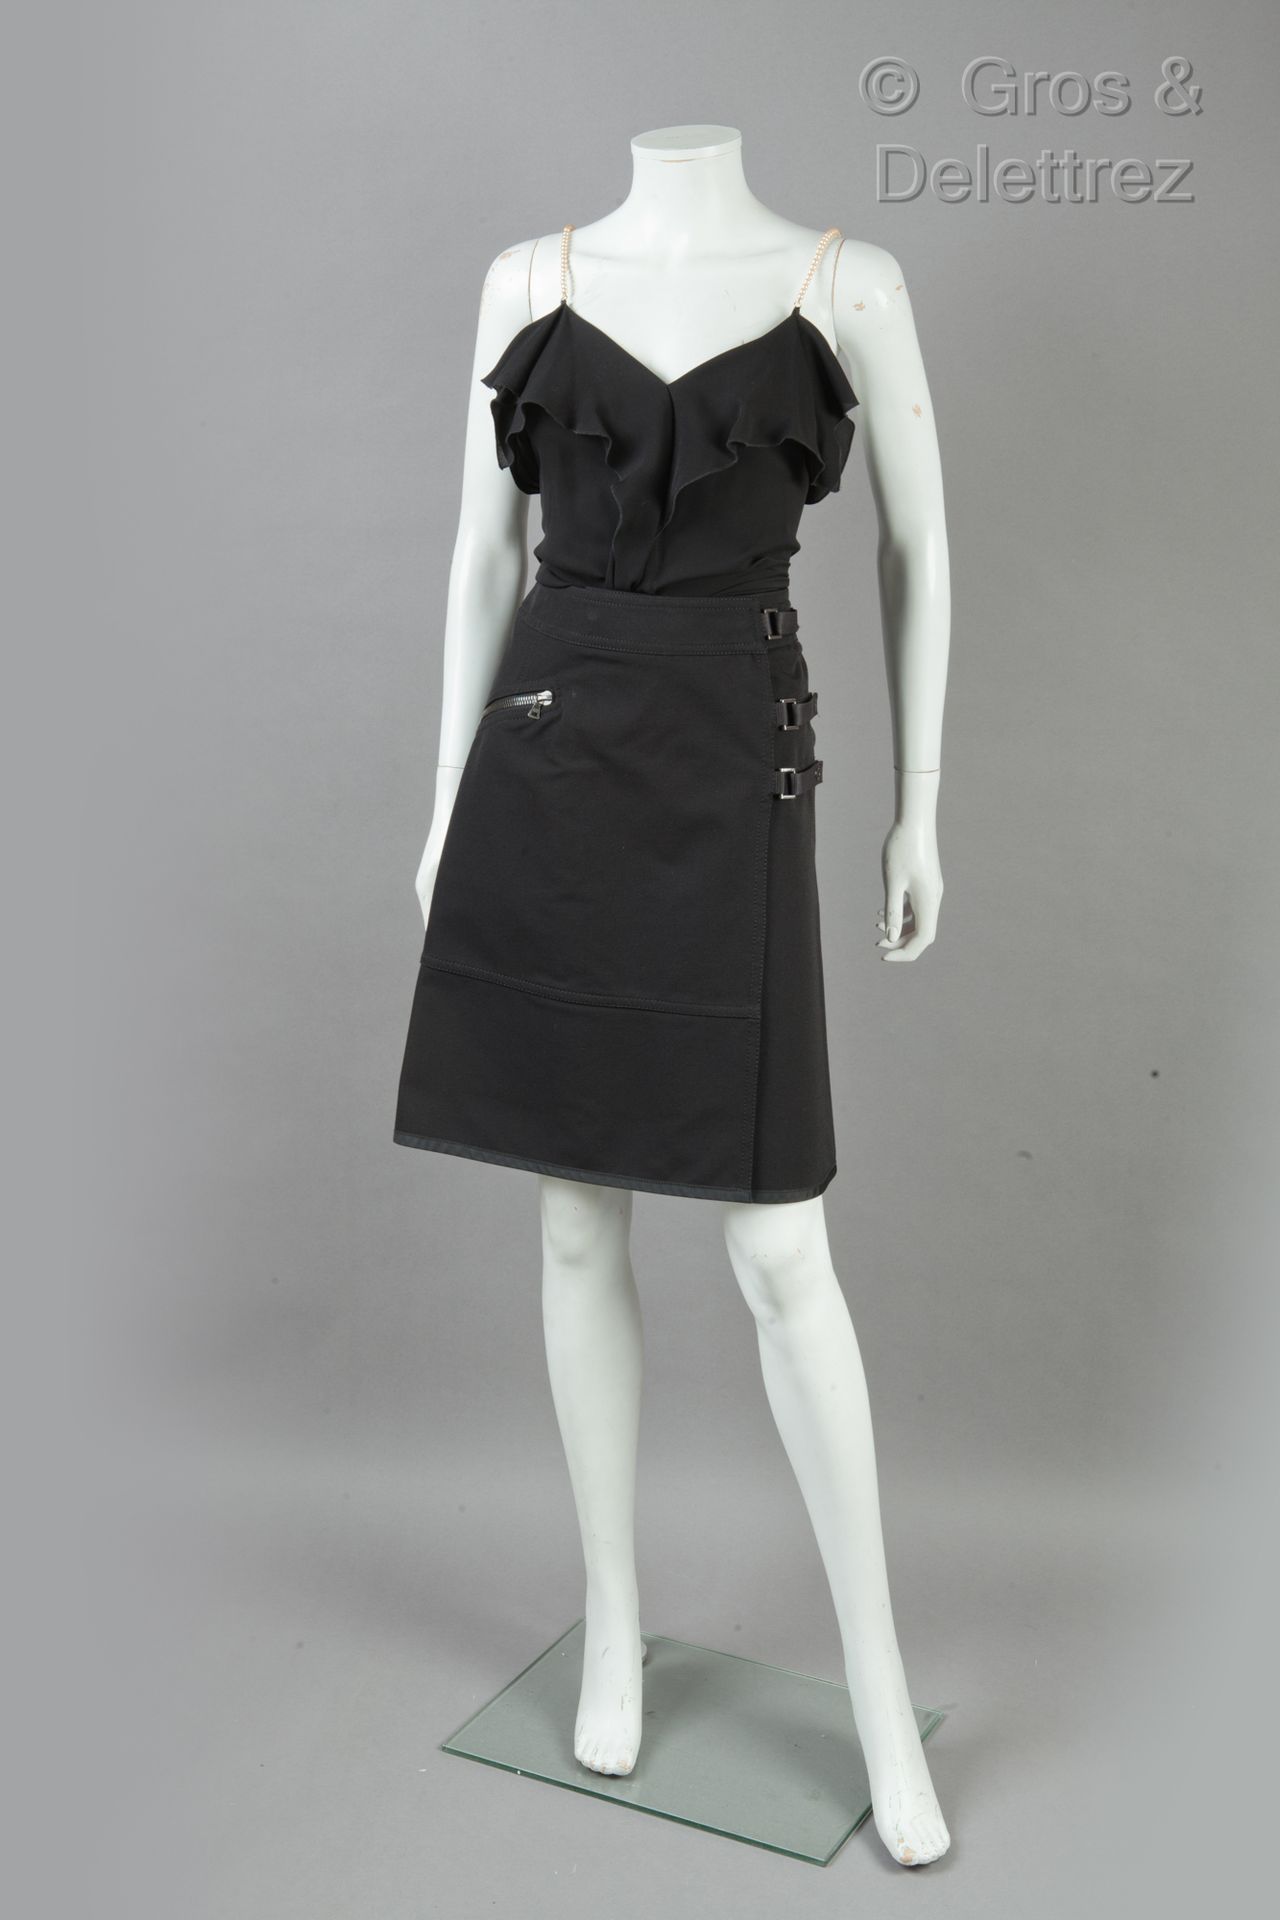 PRADA, VIKTOR & ROLF 套装包括黑色毛料长裤和苏格兰短裙，以及雪纺绉绸的蓬松上衣，仿珍珠肩带。